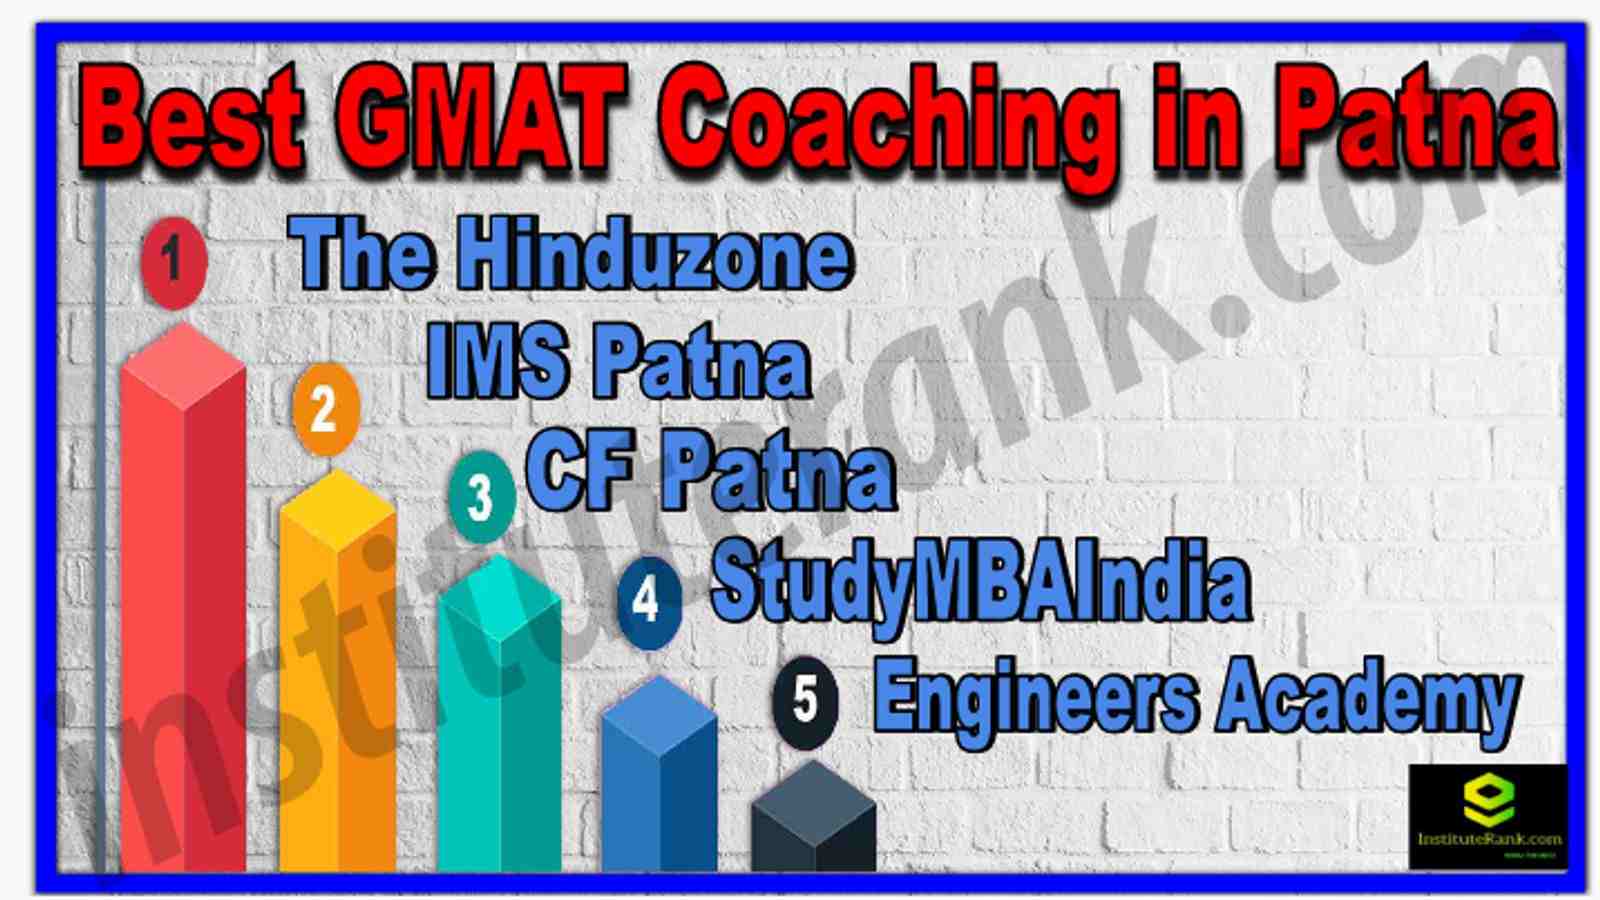 Best GMAT Coaching in Patna